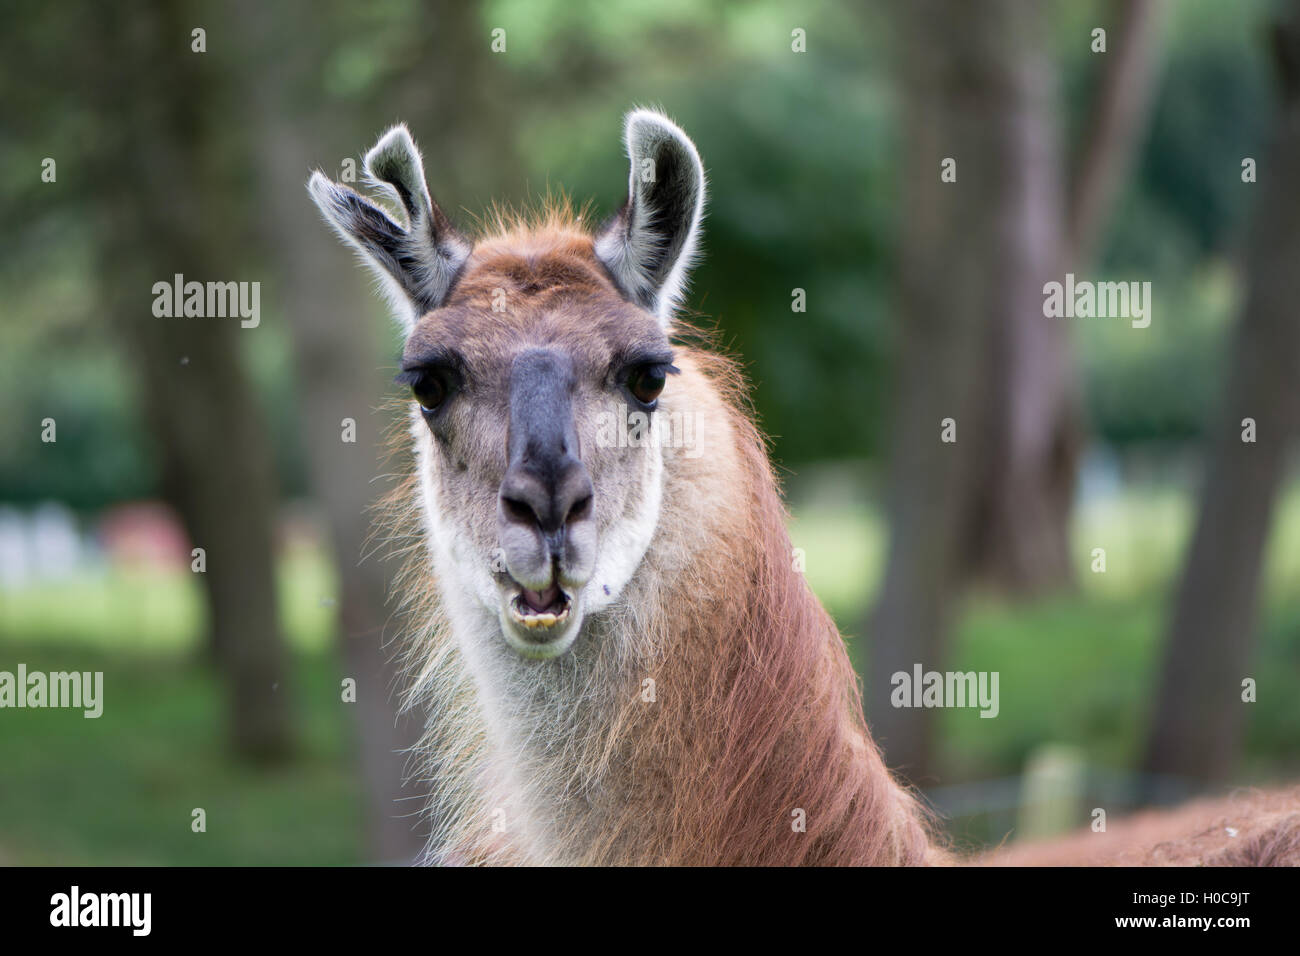 Lama mit zerrissenen Ohr Kopf und Hals. Domestizierte Kameliden hob für Wolle in UK, mit Verletzungen an Ohr und Mund offen zeigt Zähne Stockfoto